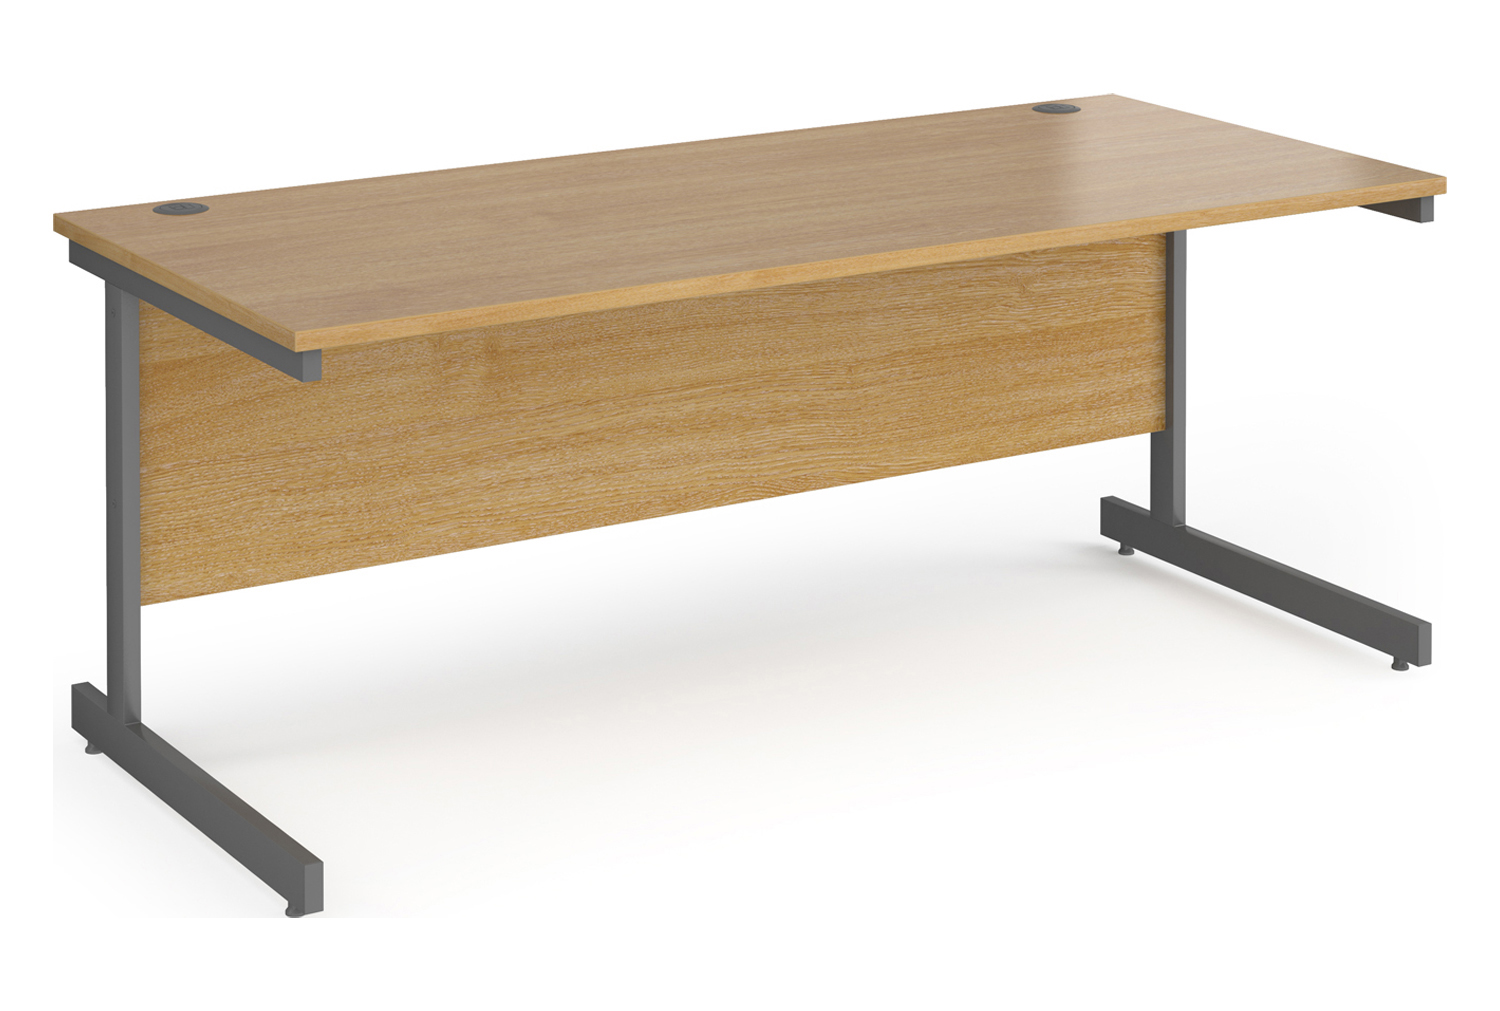 Value Line Classic+ Rectangular C-Leg Office Desk (Silver Leg), 180wx80dx73h (cm), Oak